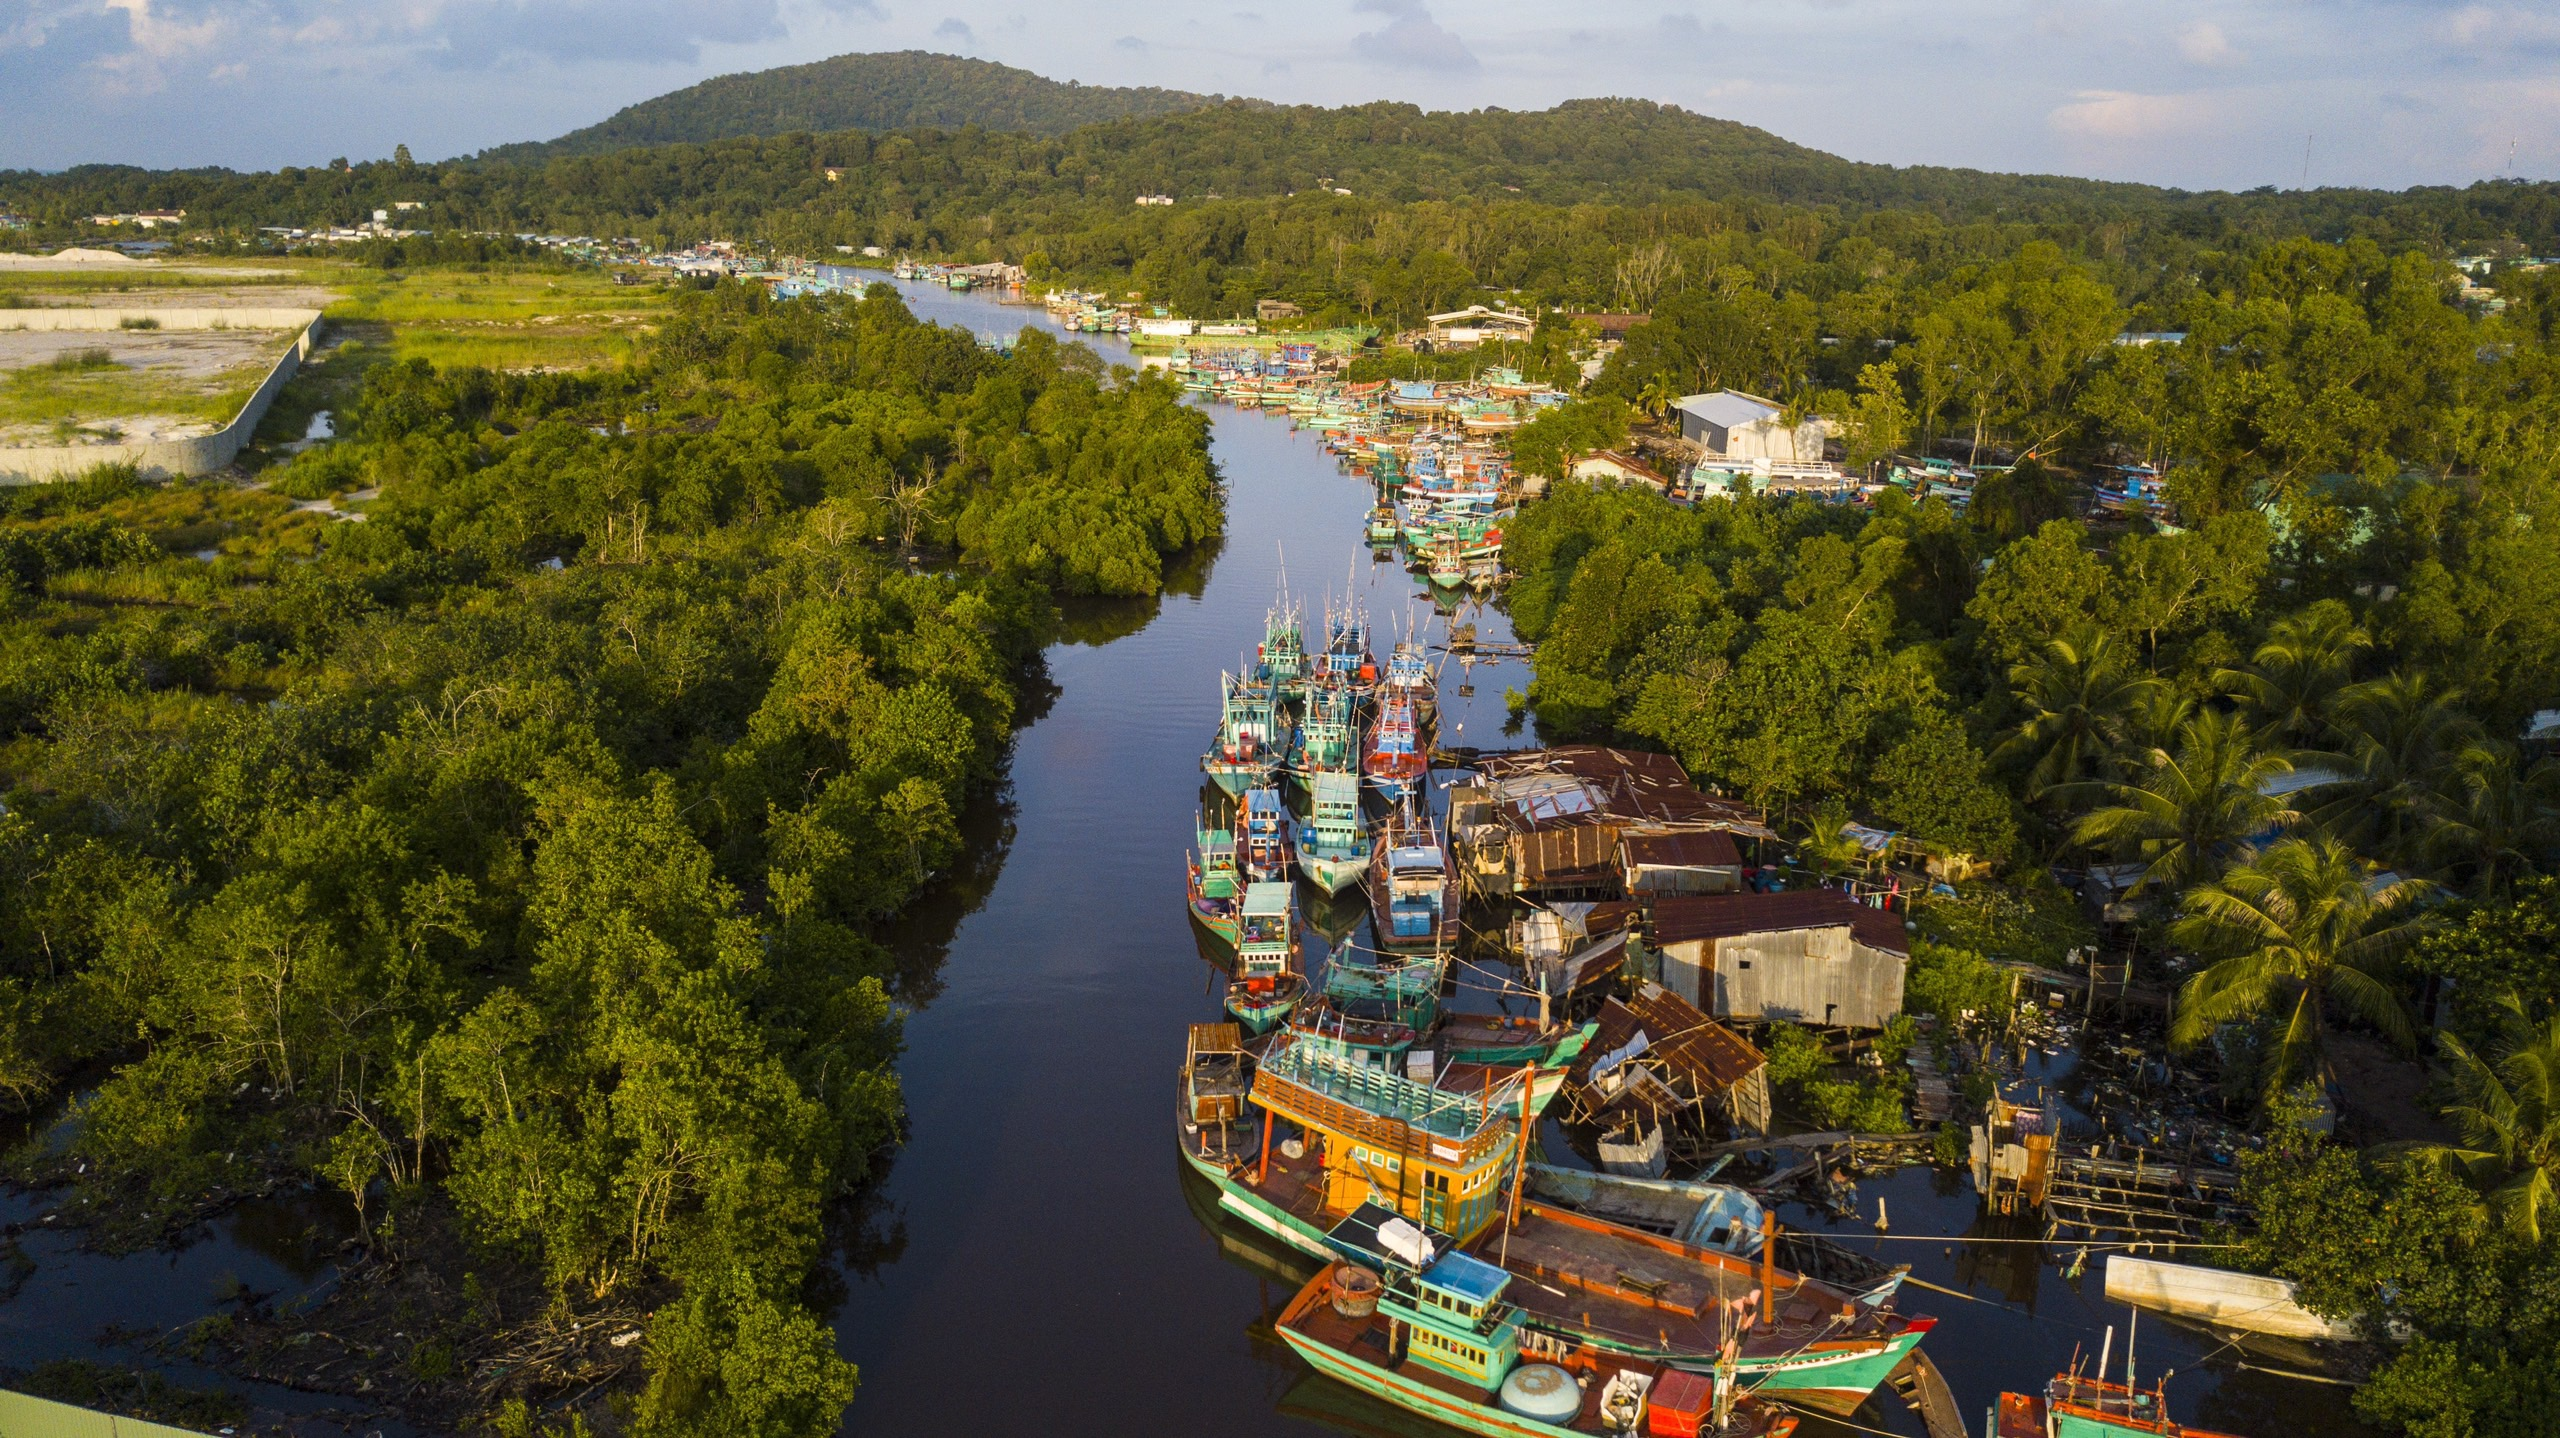 Лодки видны в рыбацкой деревне в коммуне Зыонг То, остров Фукуок, провинция Киен Джанг, южный Вьетнам. Фото: Tuoi Tre News